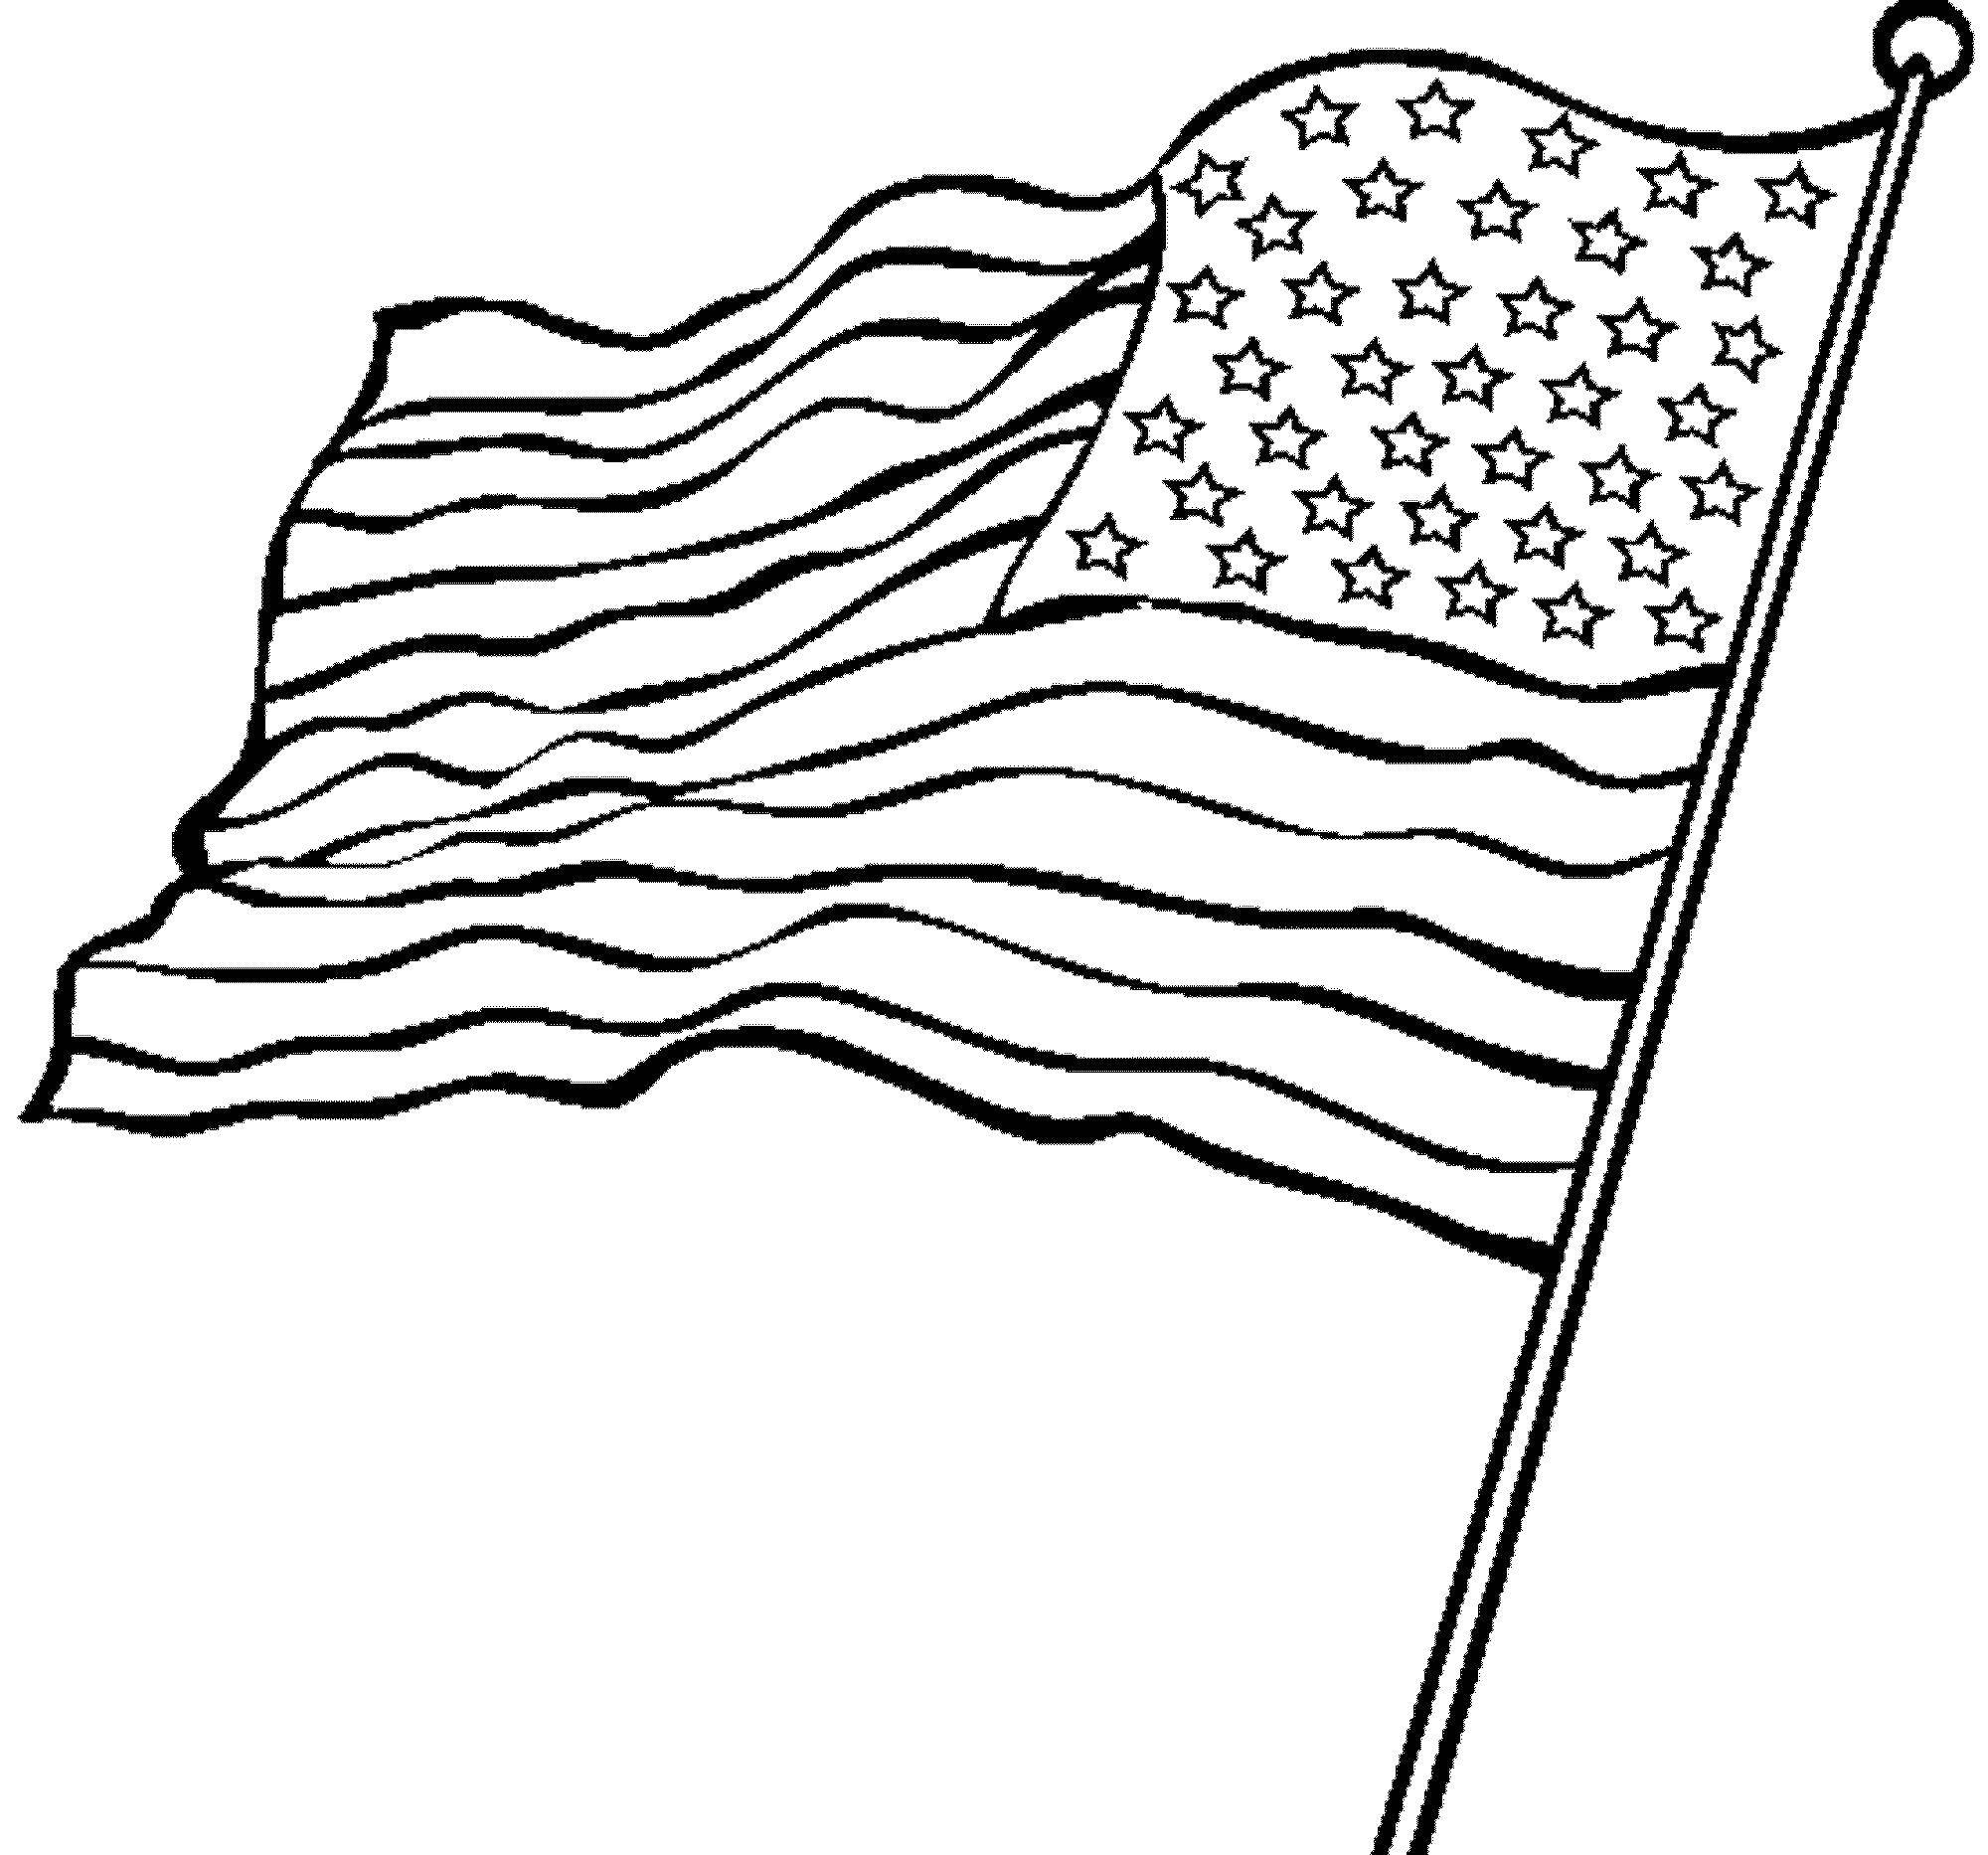 Coloring USA flag. Category USA . Tags:  America, USA, flag.